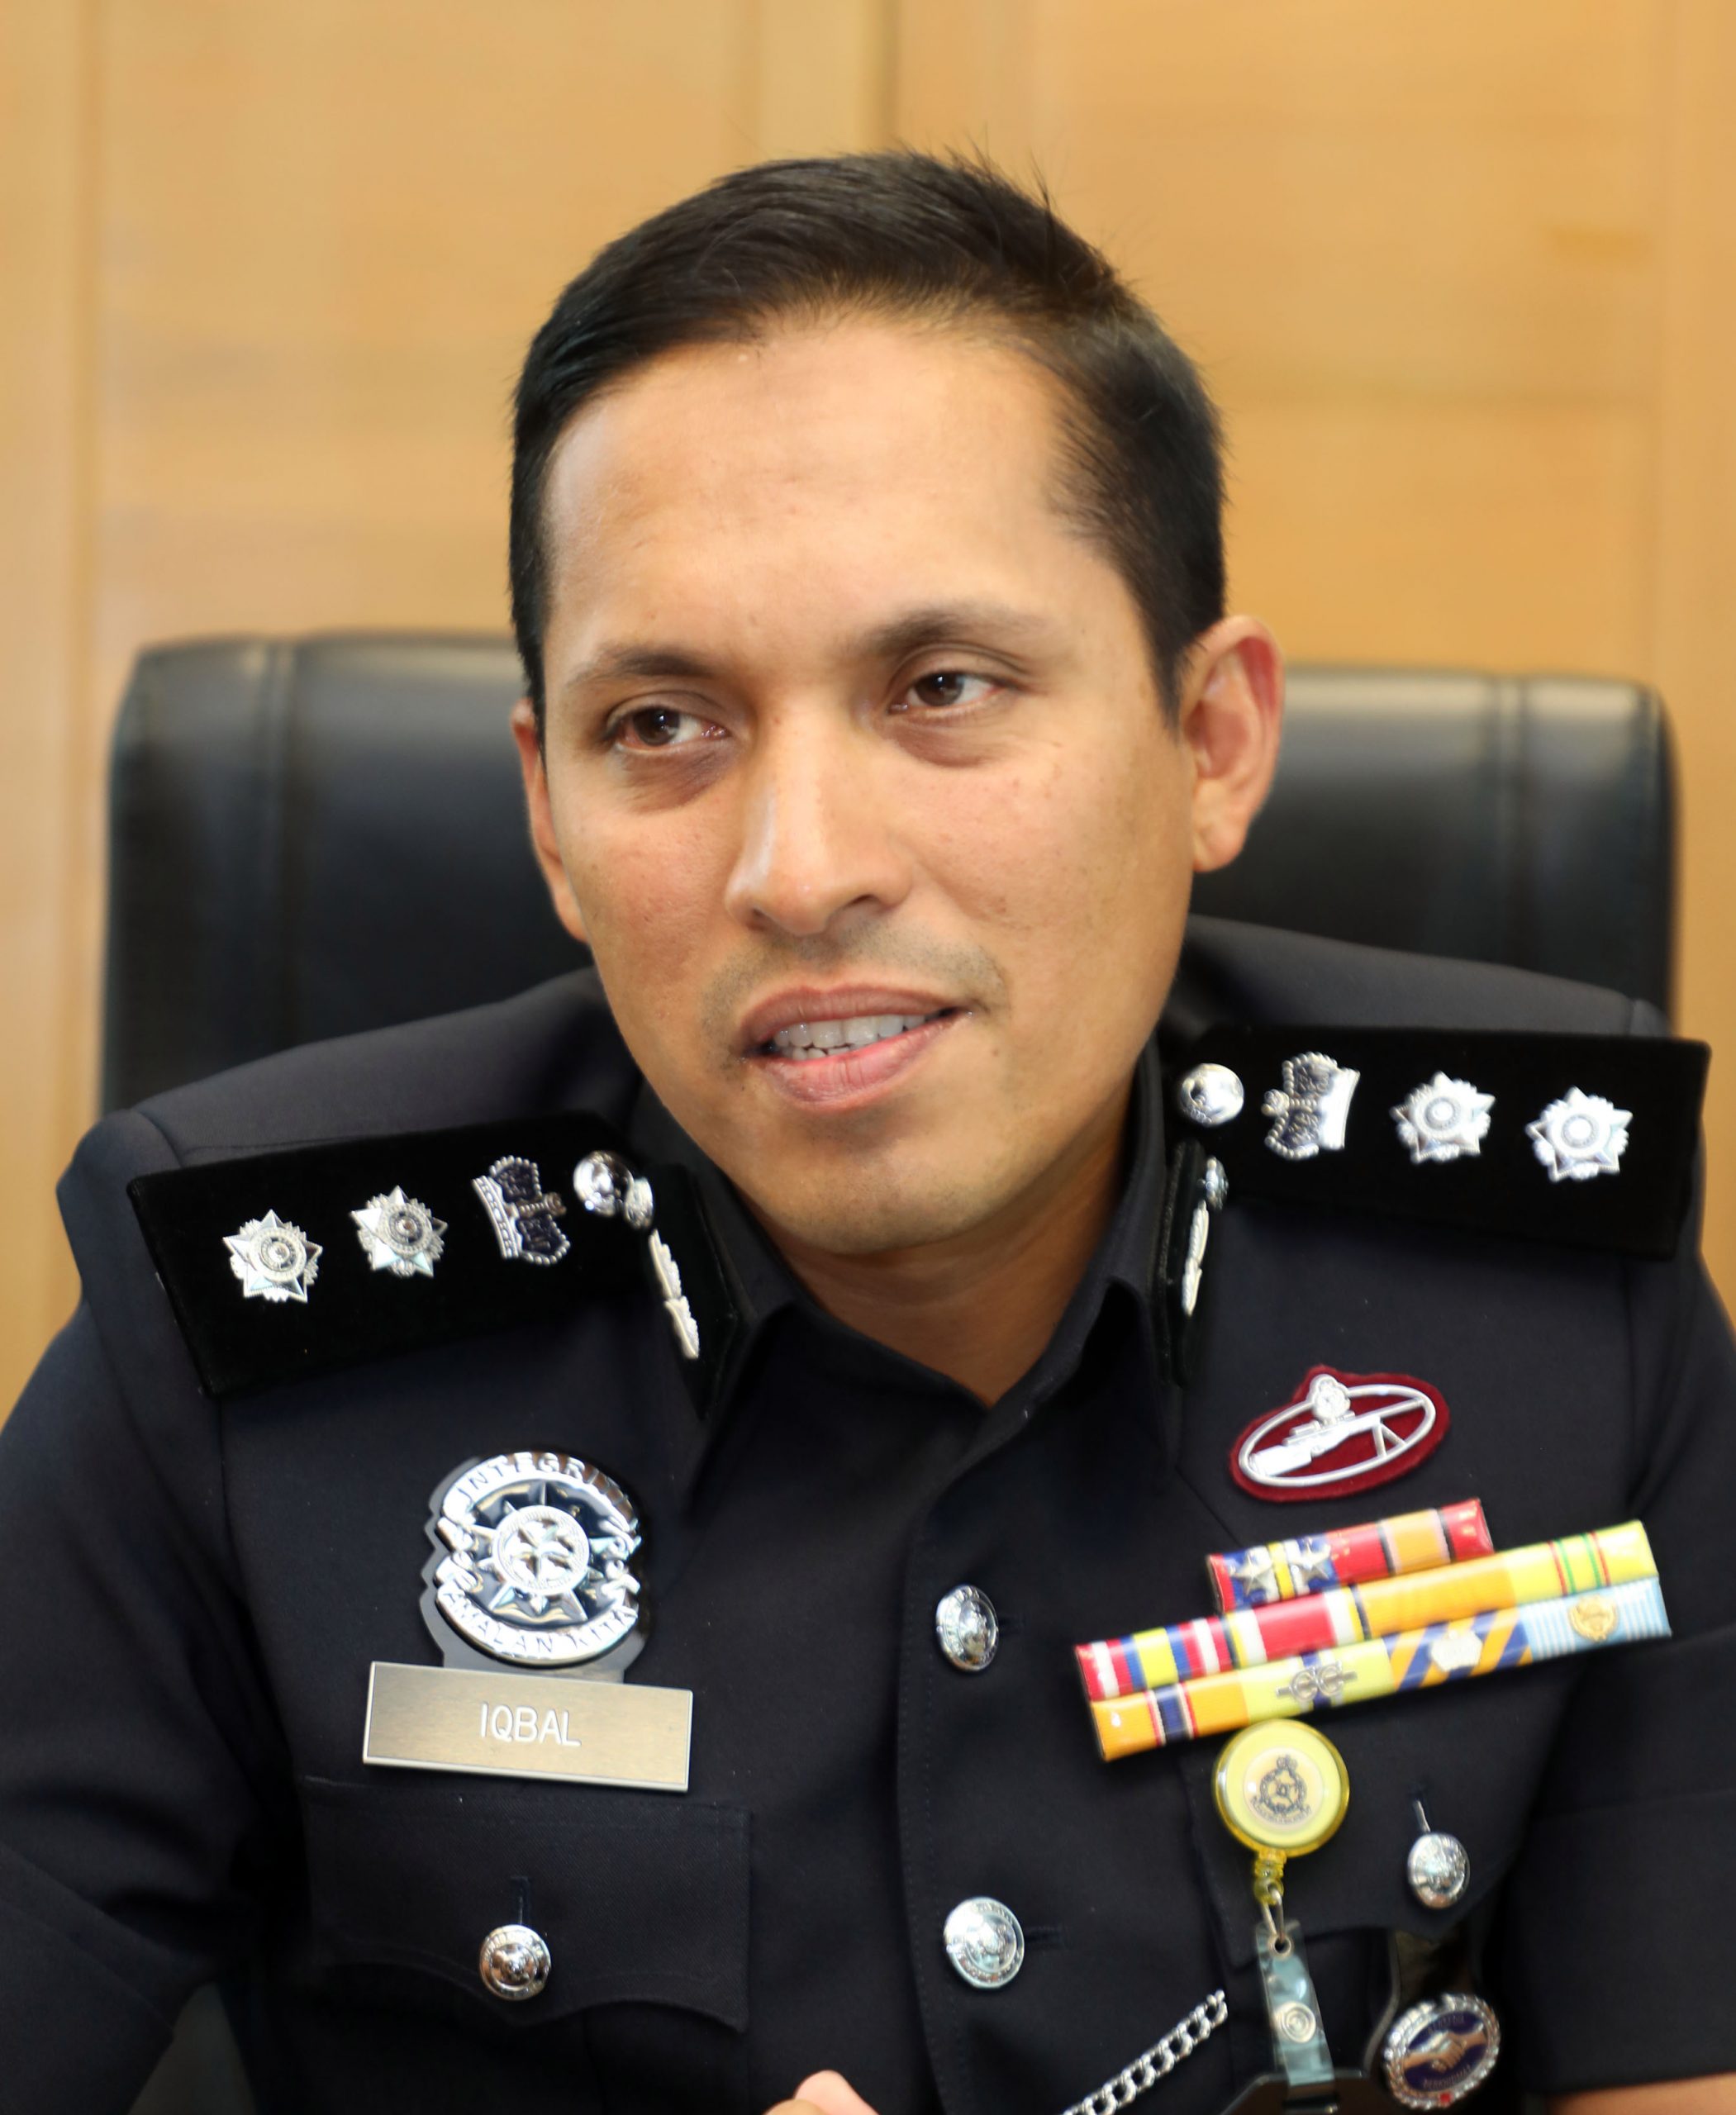 封面/依峇年41岁任沙亚南警区主任 “成功凭努力非因年轻” 